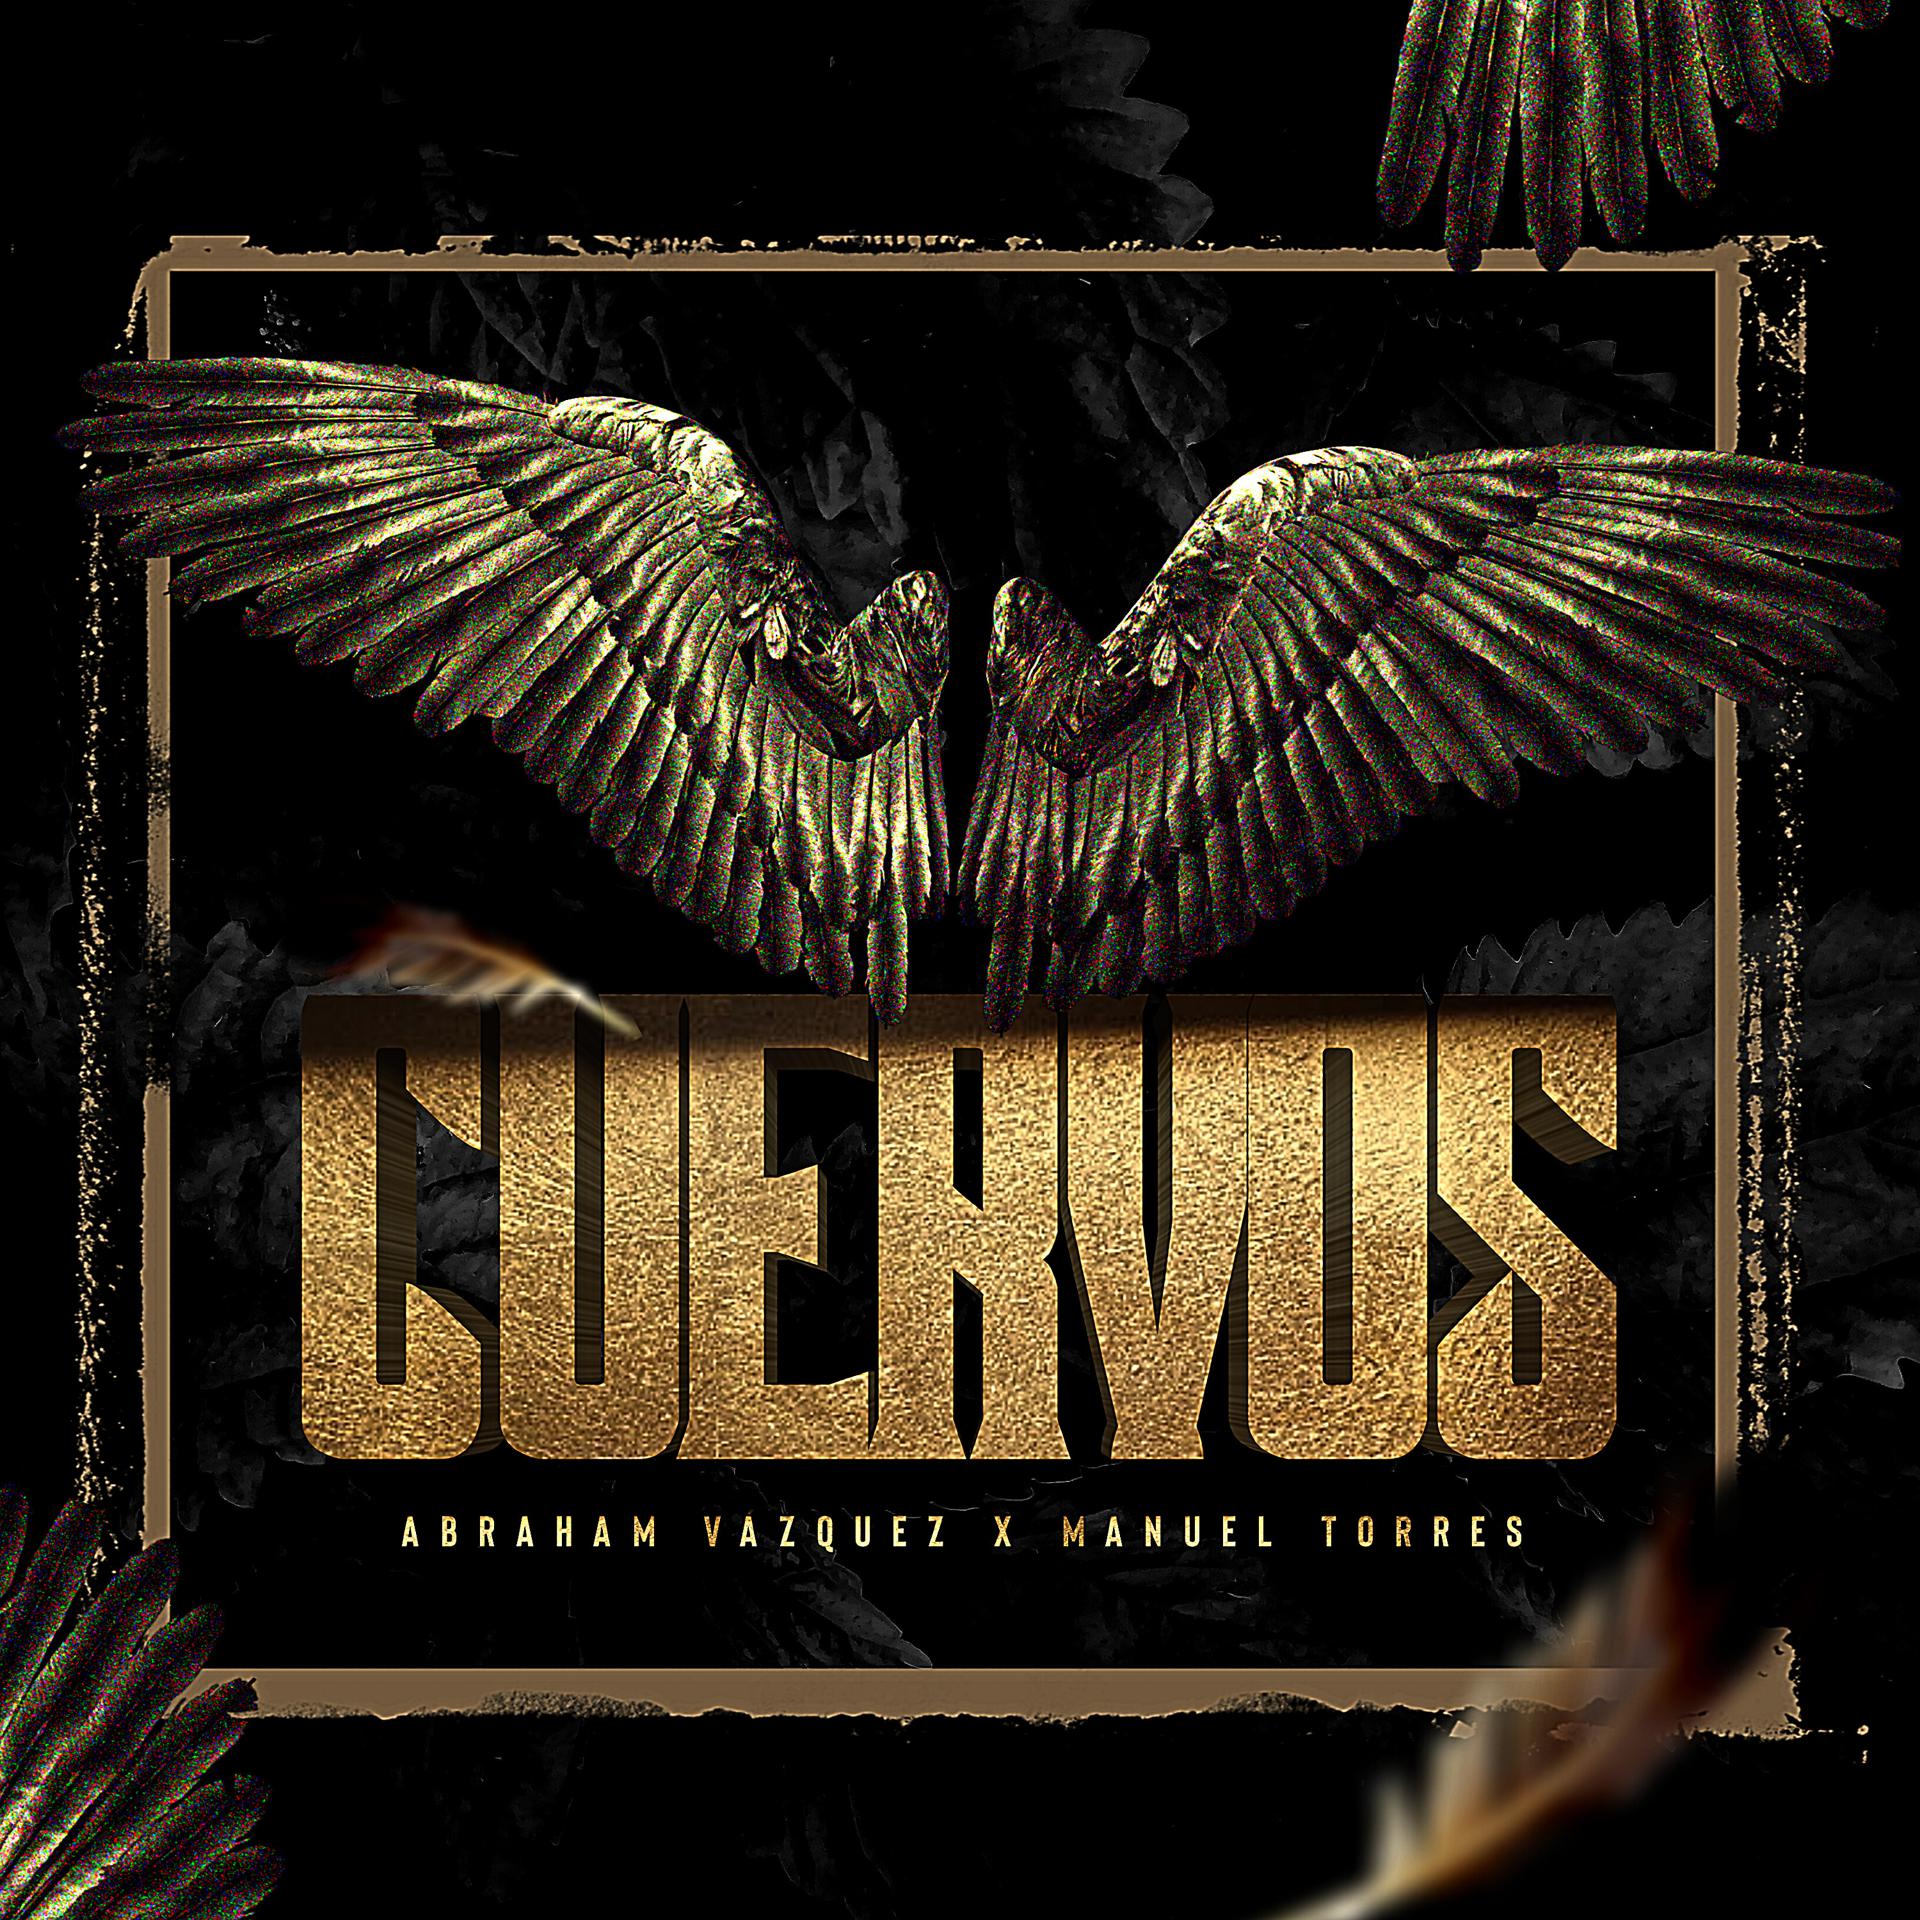 Постер альбома Cuervos